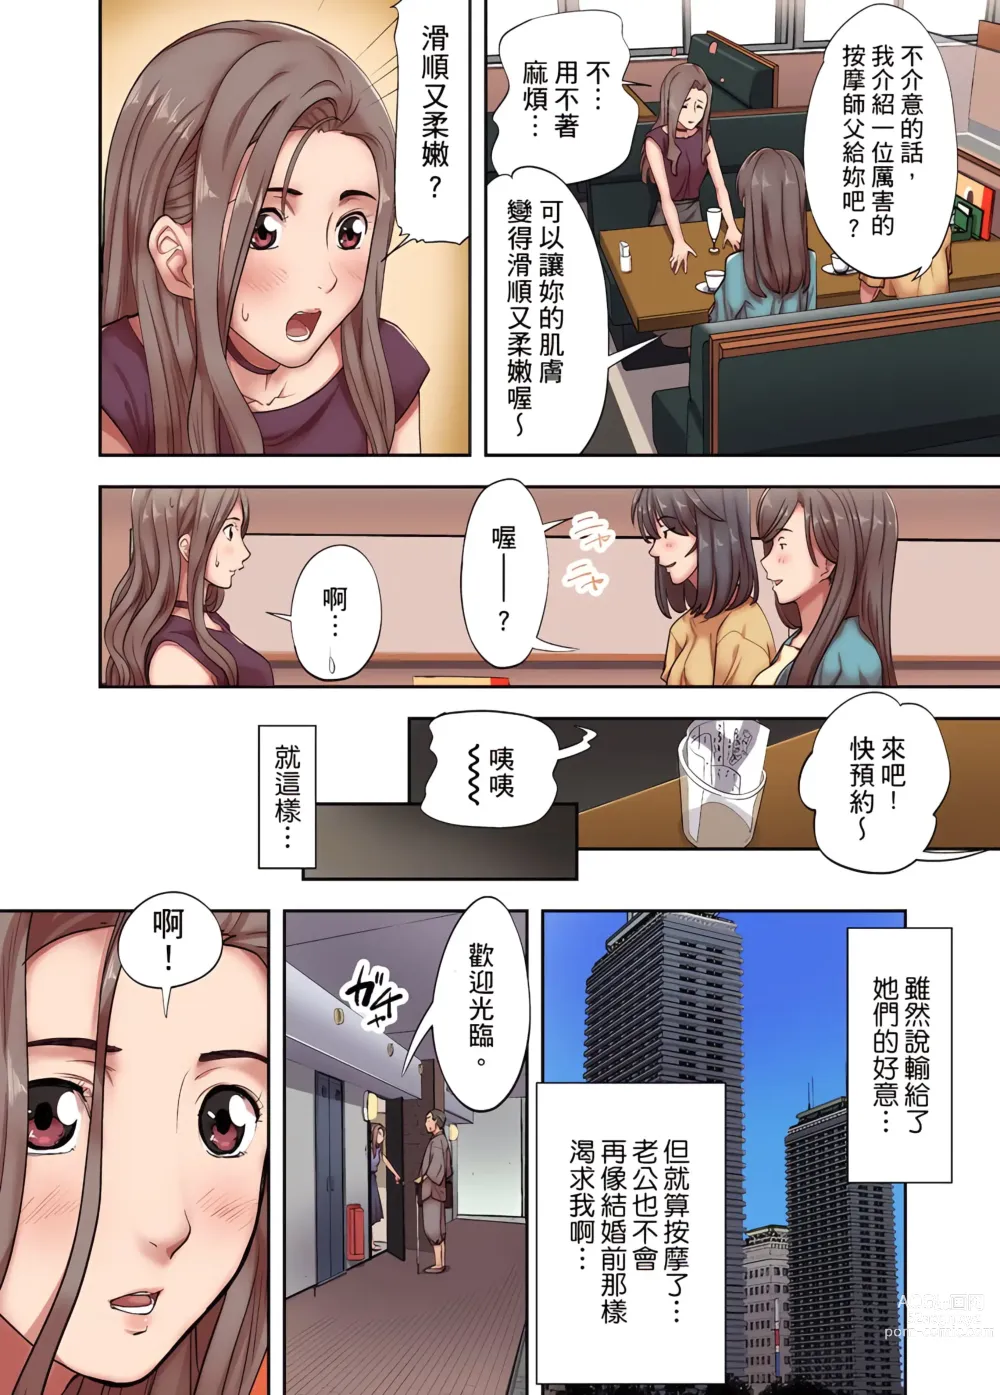 Page 6 of manga 人妻專攻！超猛按摩師的敏感穴位按摩術～不要連裡面的穴道一起刺激啦！1-34話